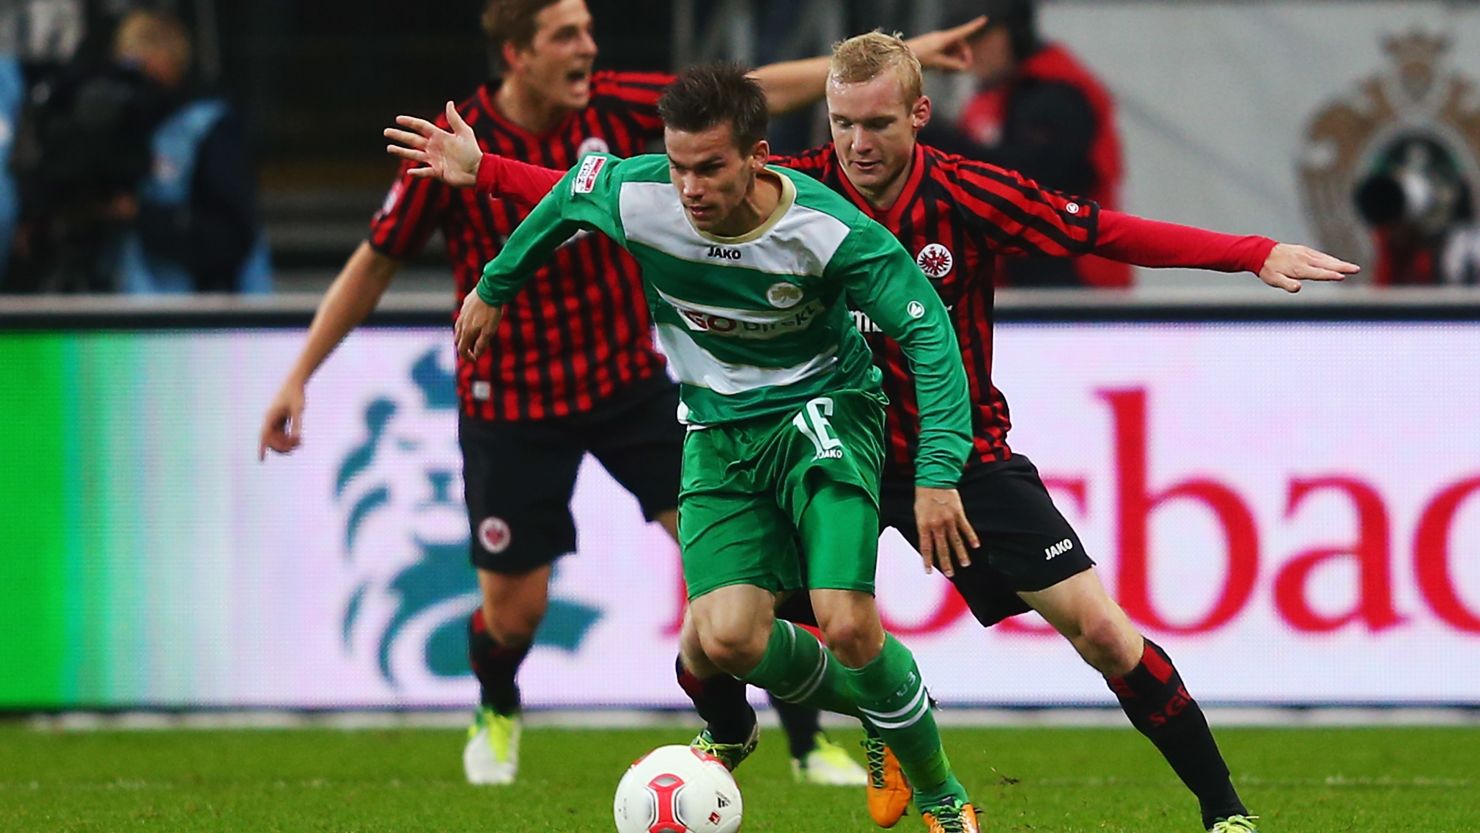 Zoltan Stieber 's second-half strike ensured Greuther Fürth claimed a battling point at an in-form Eintracht Frankfurt.